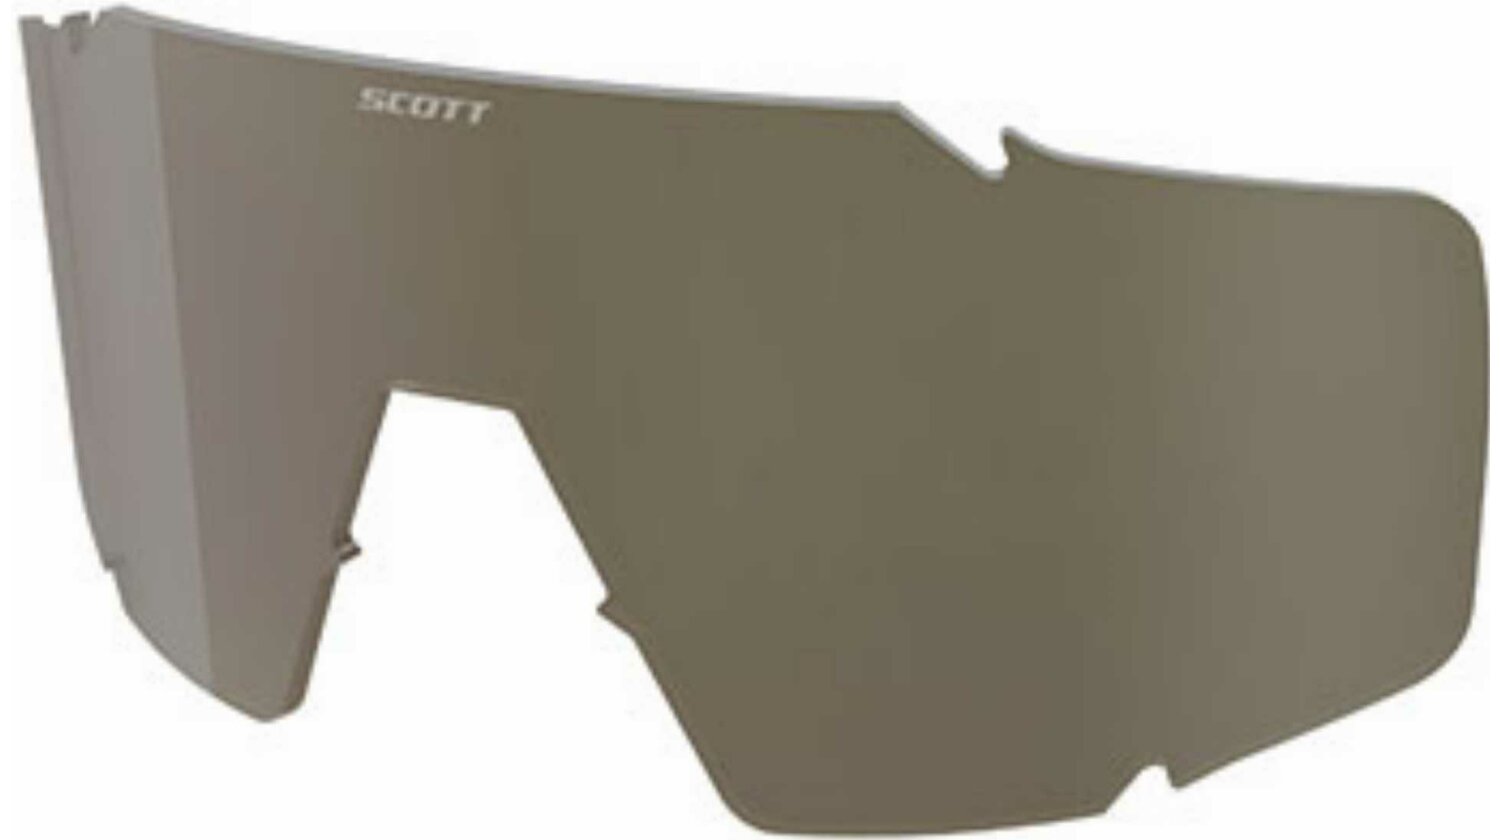 Scott Shield Sonnenbrillglas bronze chrome